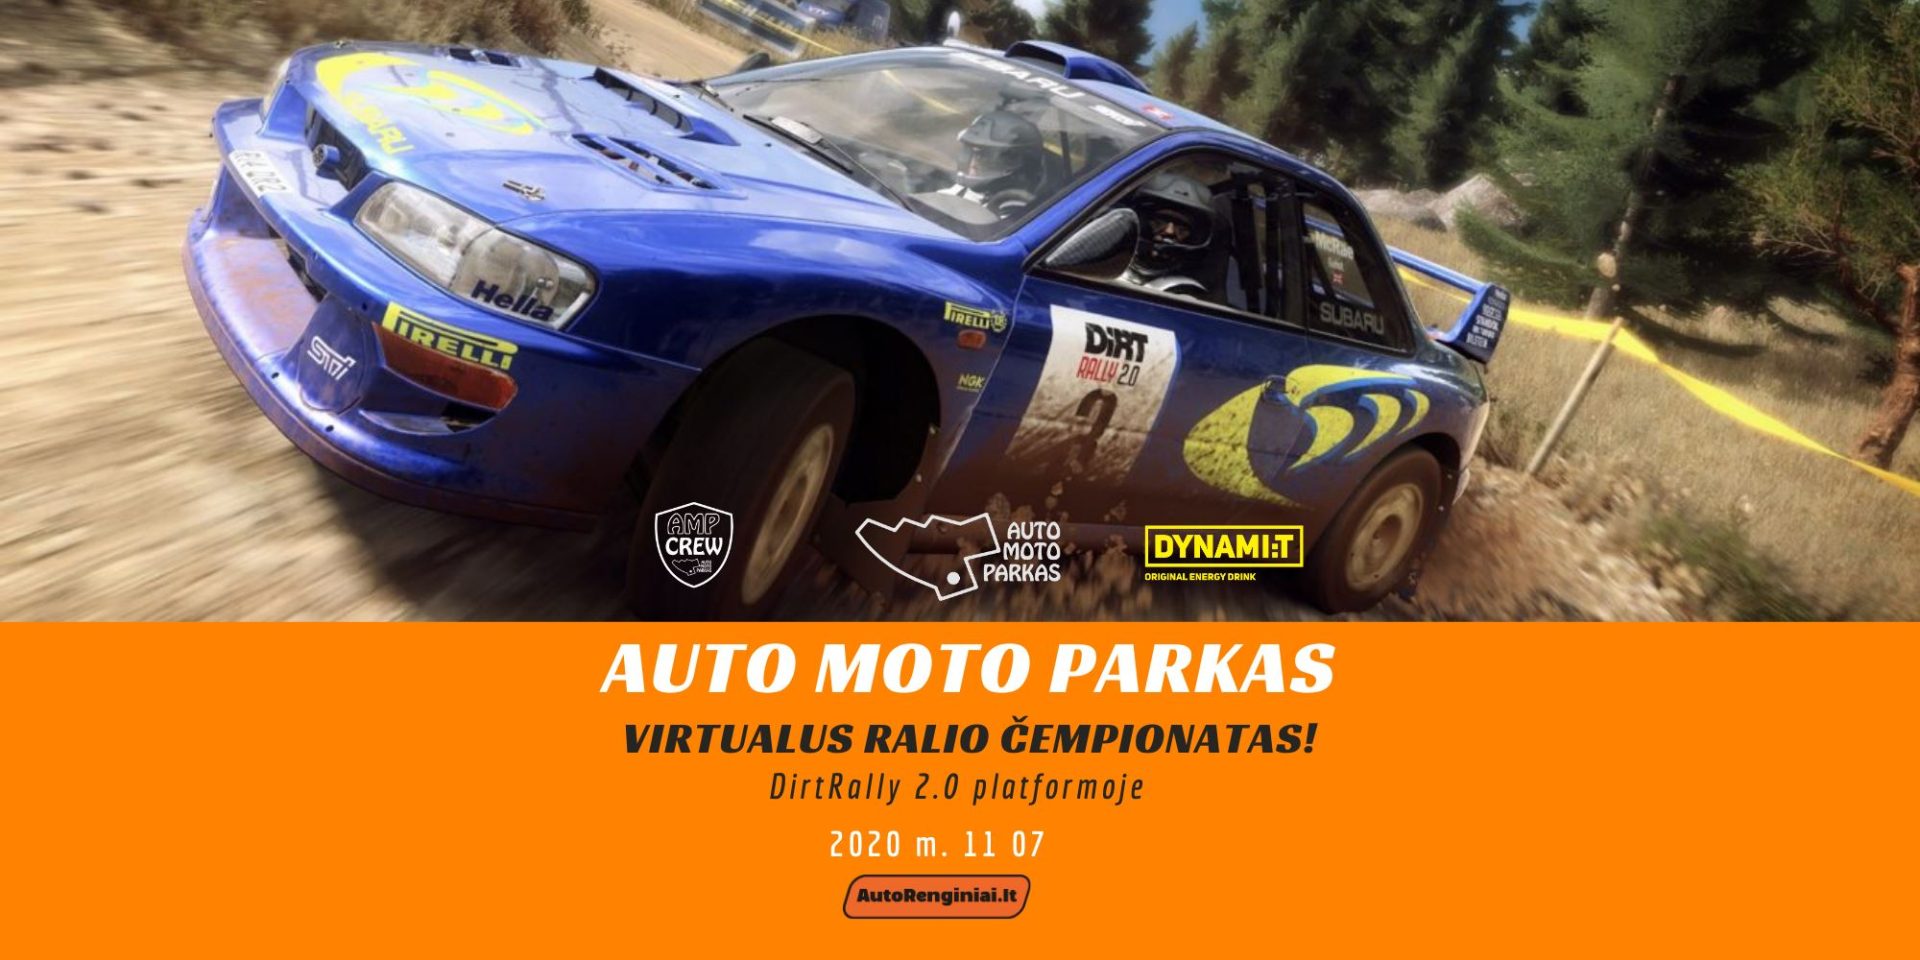 "Auto Moto Parkas" virtualus ralio čempionatas AWD